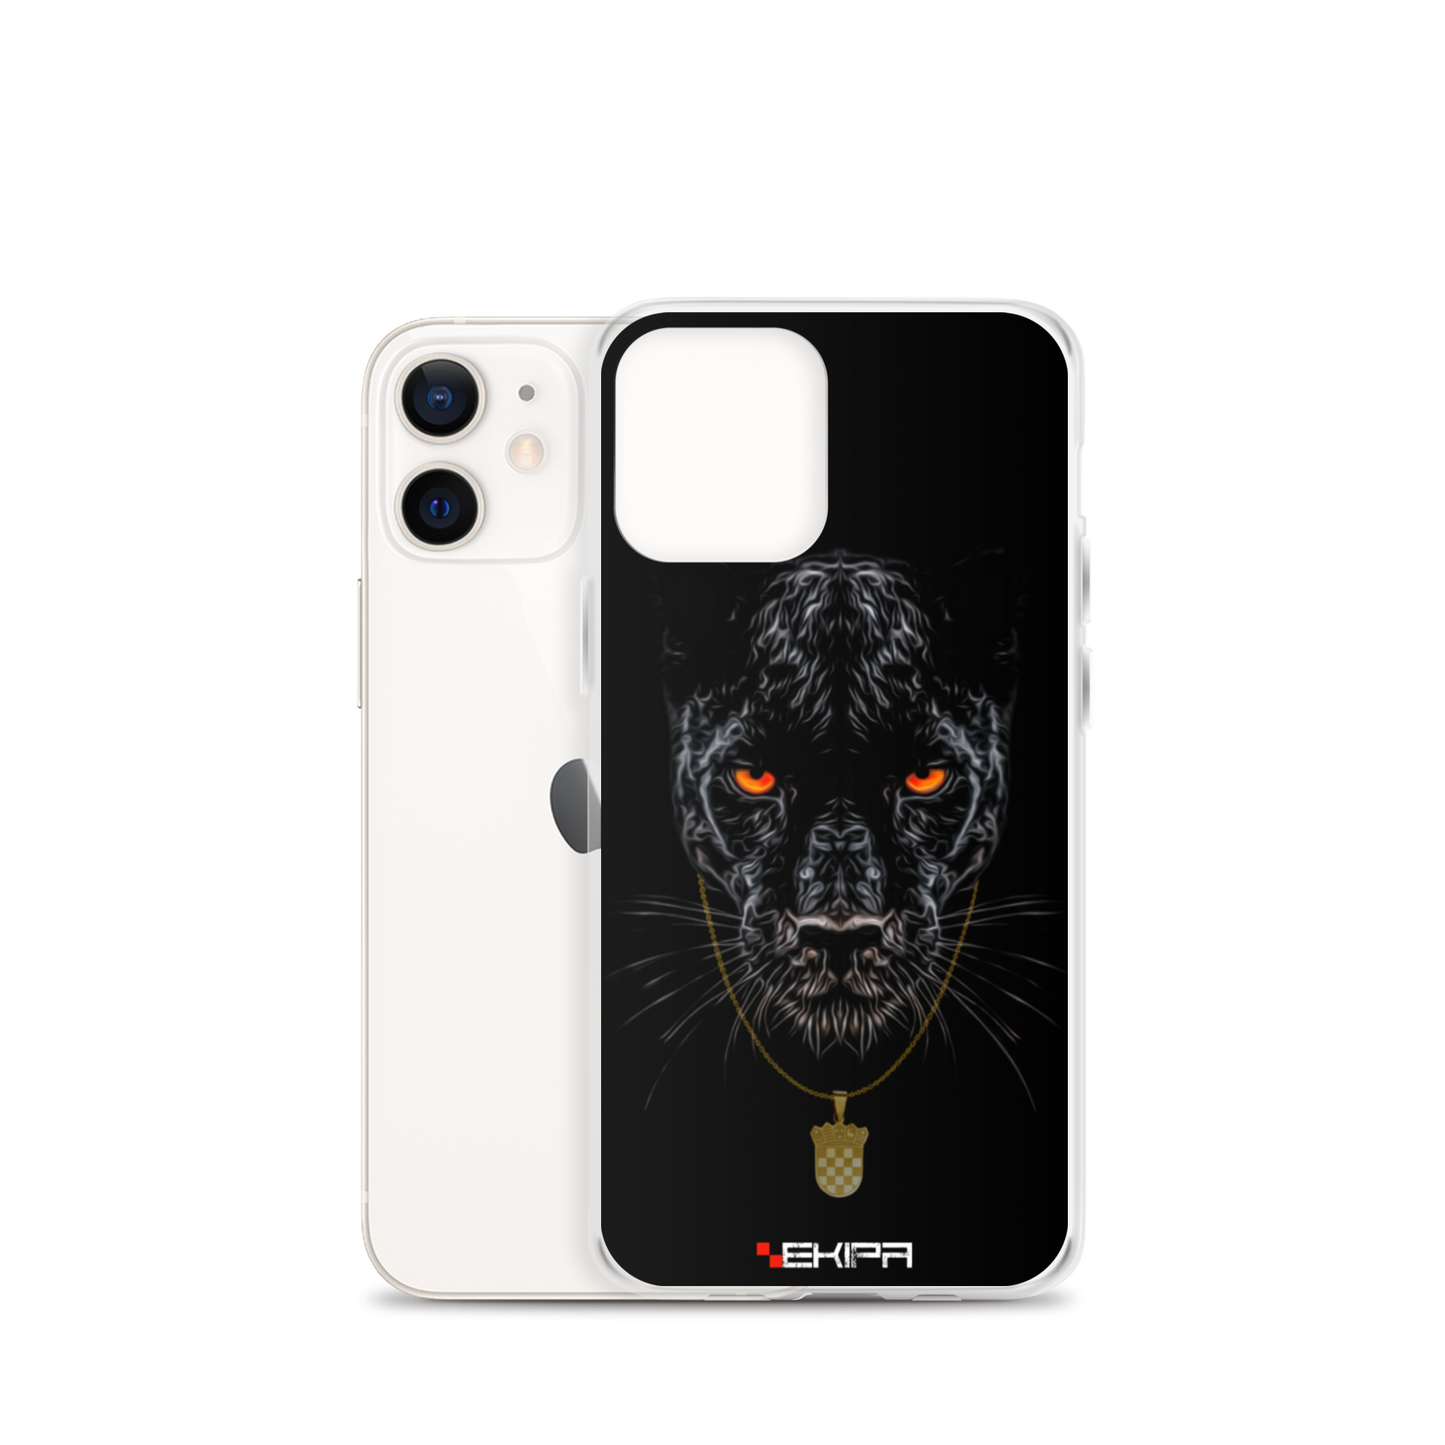 "Pantera" - iPhone case